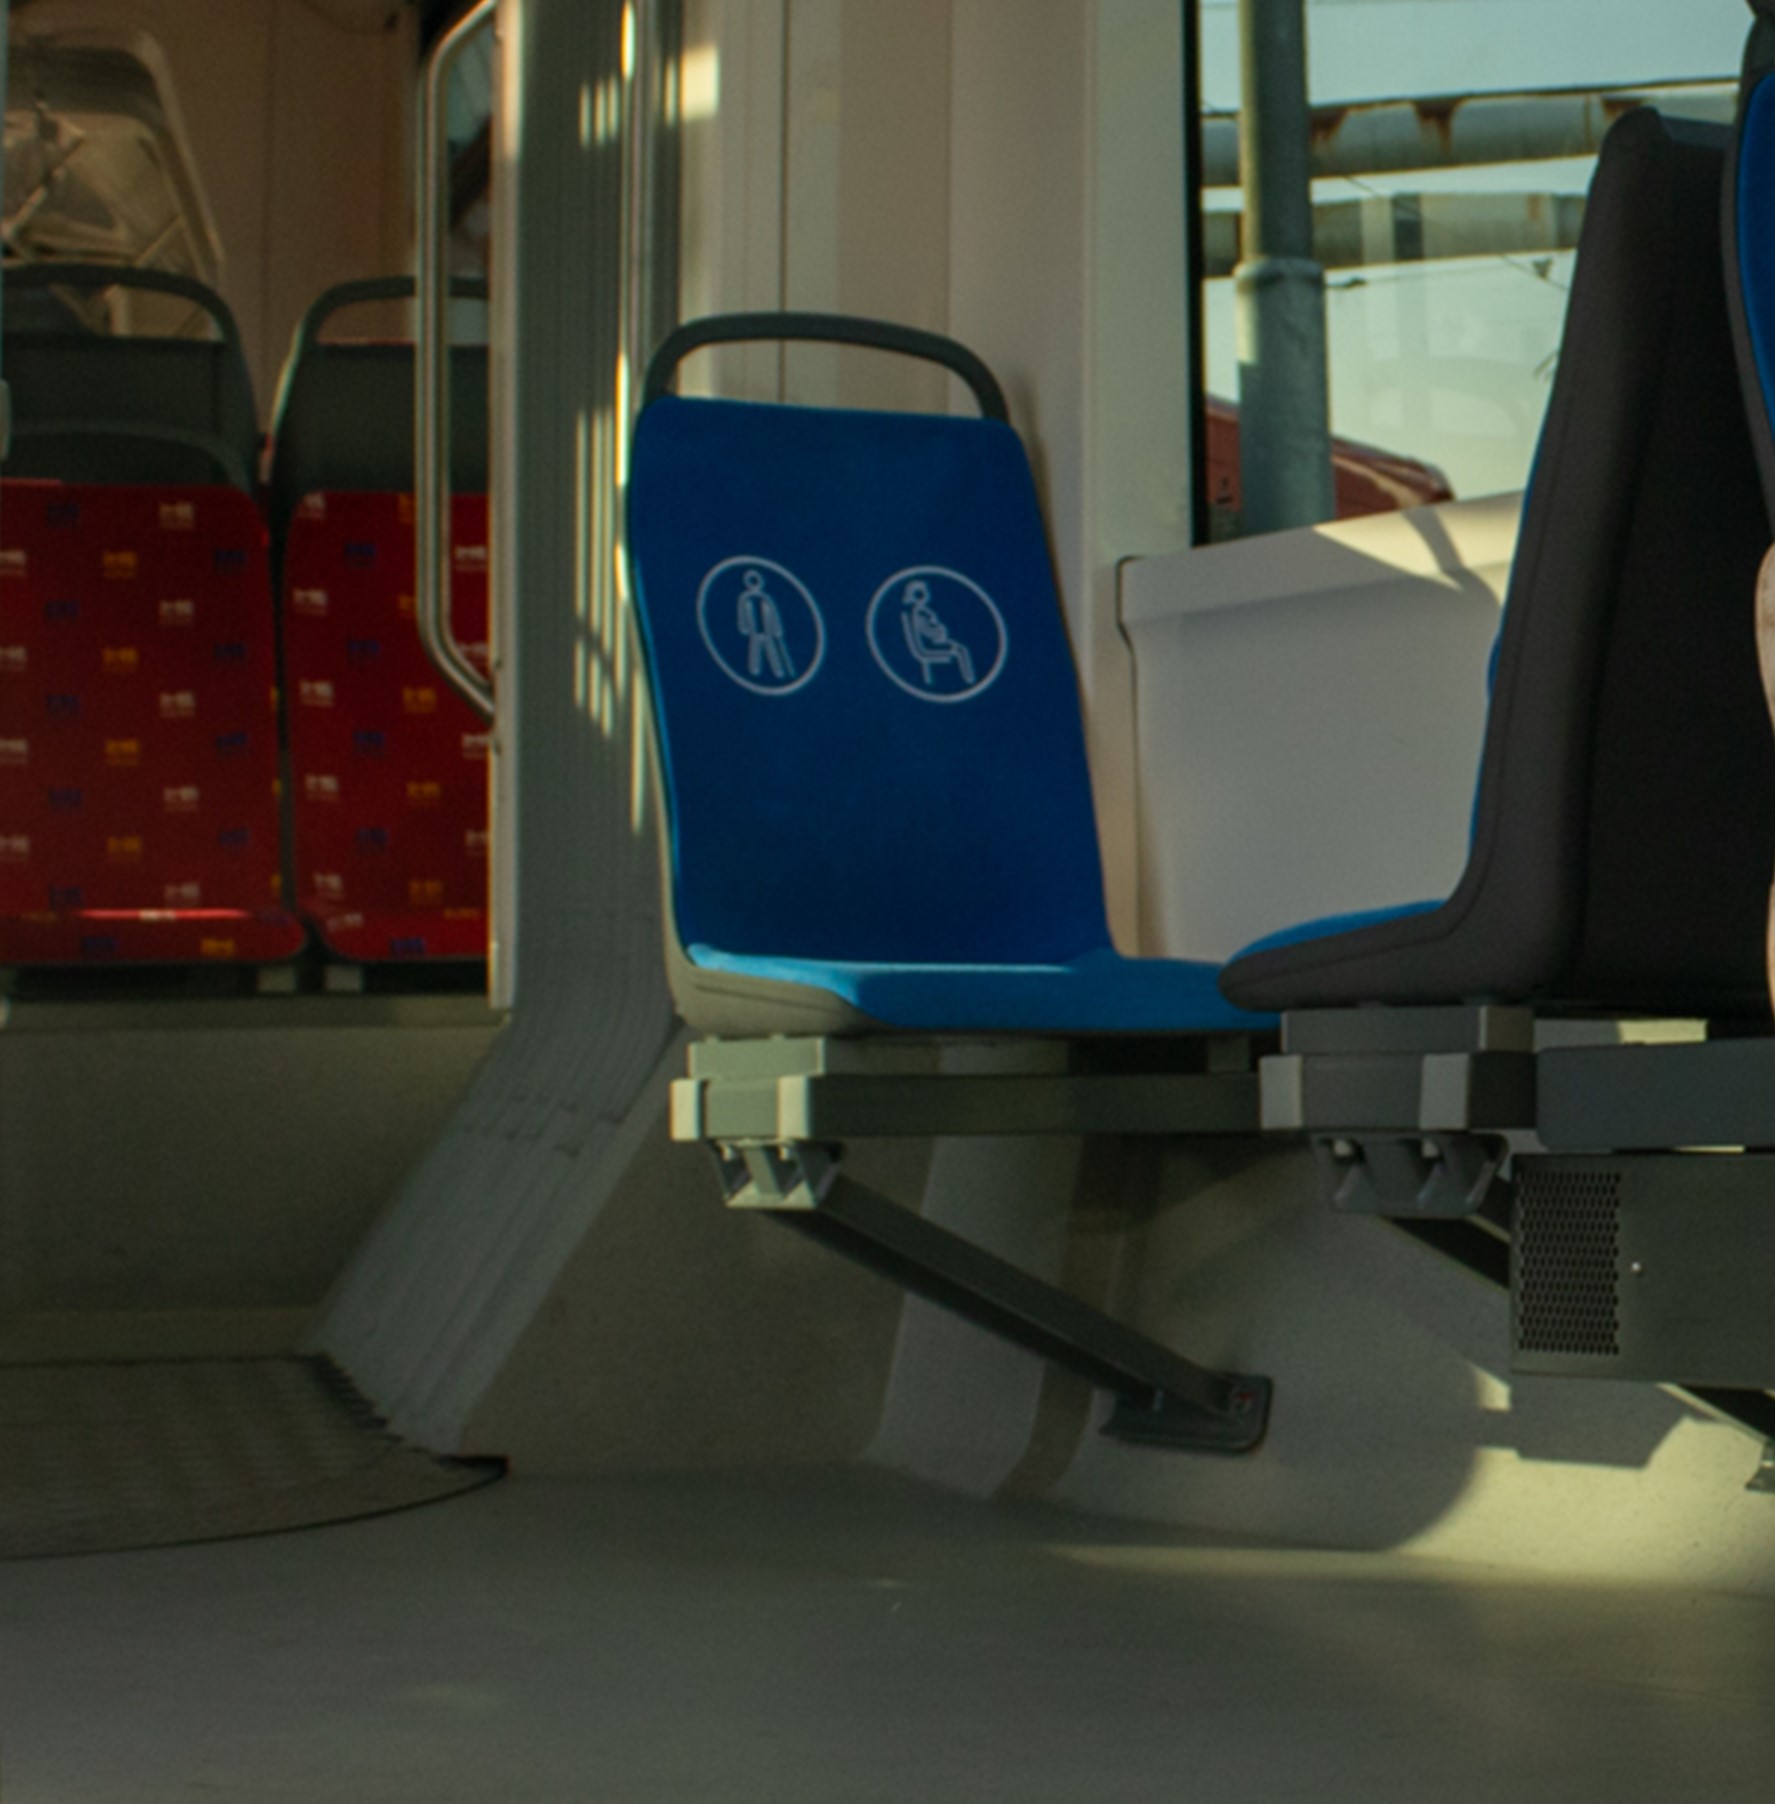 Na obrázku je záber na sedačku v autobuse, ktorá je modrej farby a na chrbtovej časti má výrazné biele piktogramy s označením človeka s bielou palicou či nastávajúcej matky.